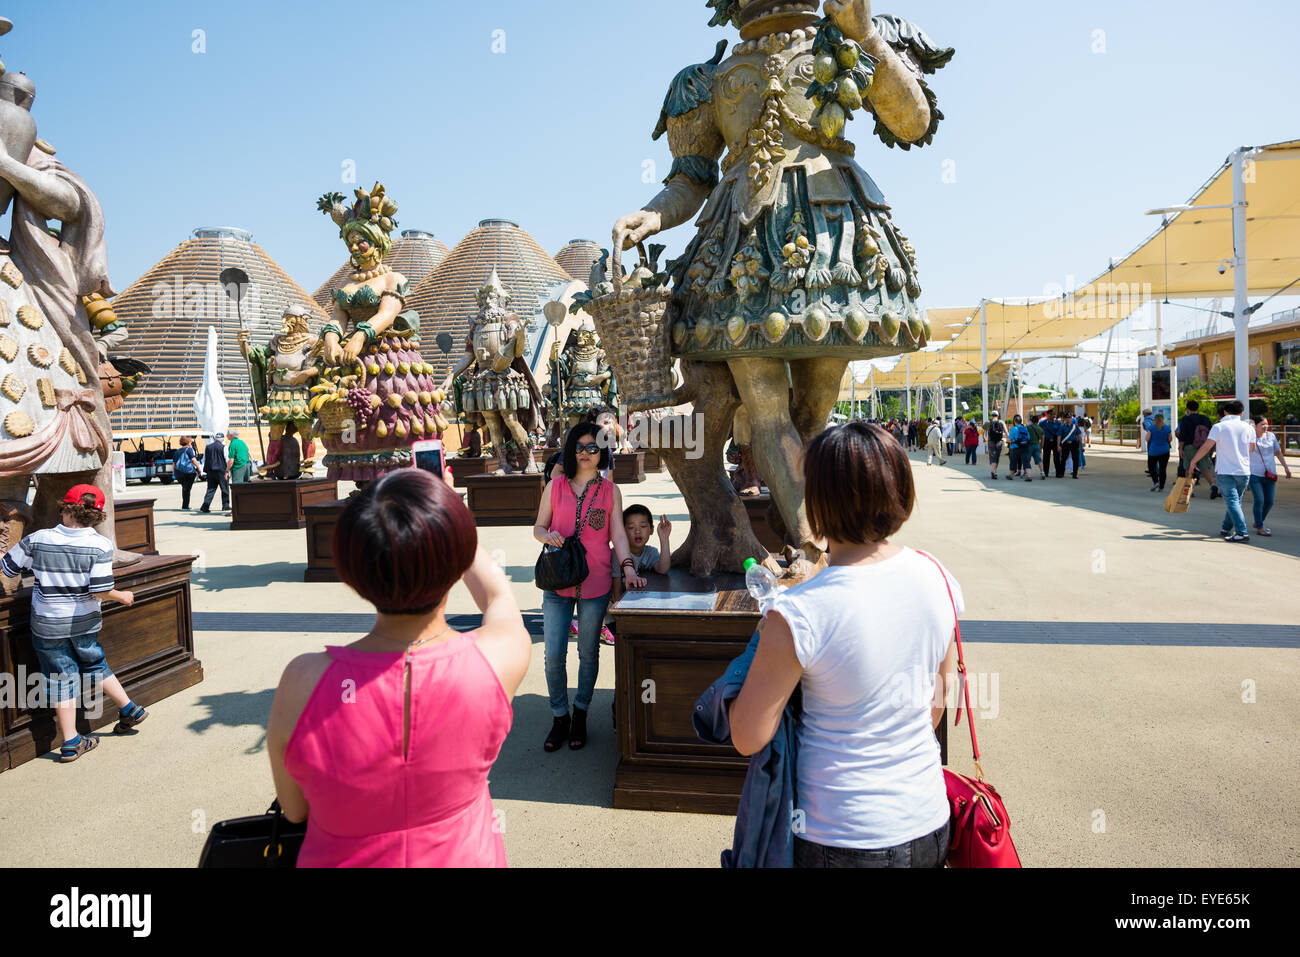 MILAN, ITALIE - juin 3, 2015 personnes visitent l'Expo 2015, exposition universelle sur le thème de la nourriture - statue sur l'entrée avec l'homme en forme de fruits inspiré par Arcimboldo peintre italien Banque D'Images